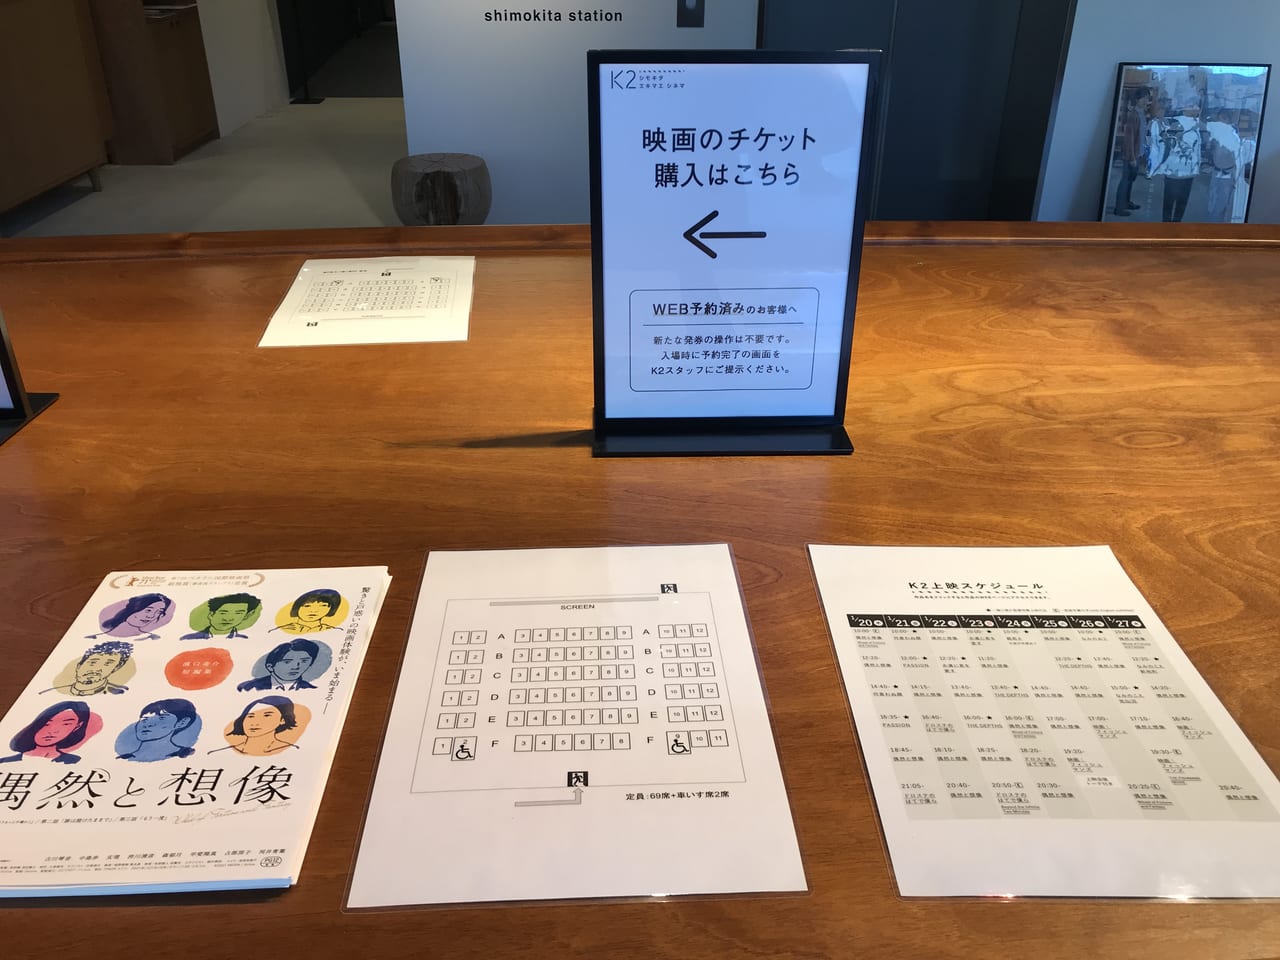 世田谷区下北沢シモキタエキウエにシモキタエキマエシネマK2が2022年1月20日オープンしました。